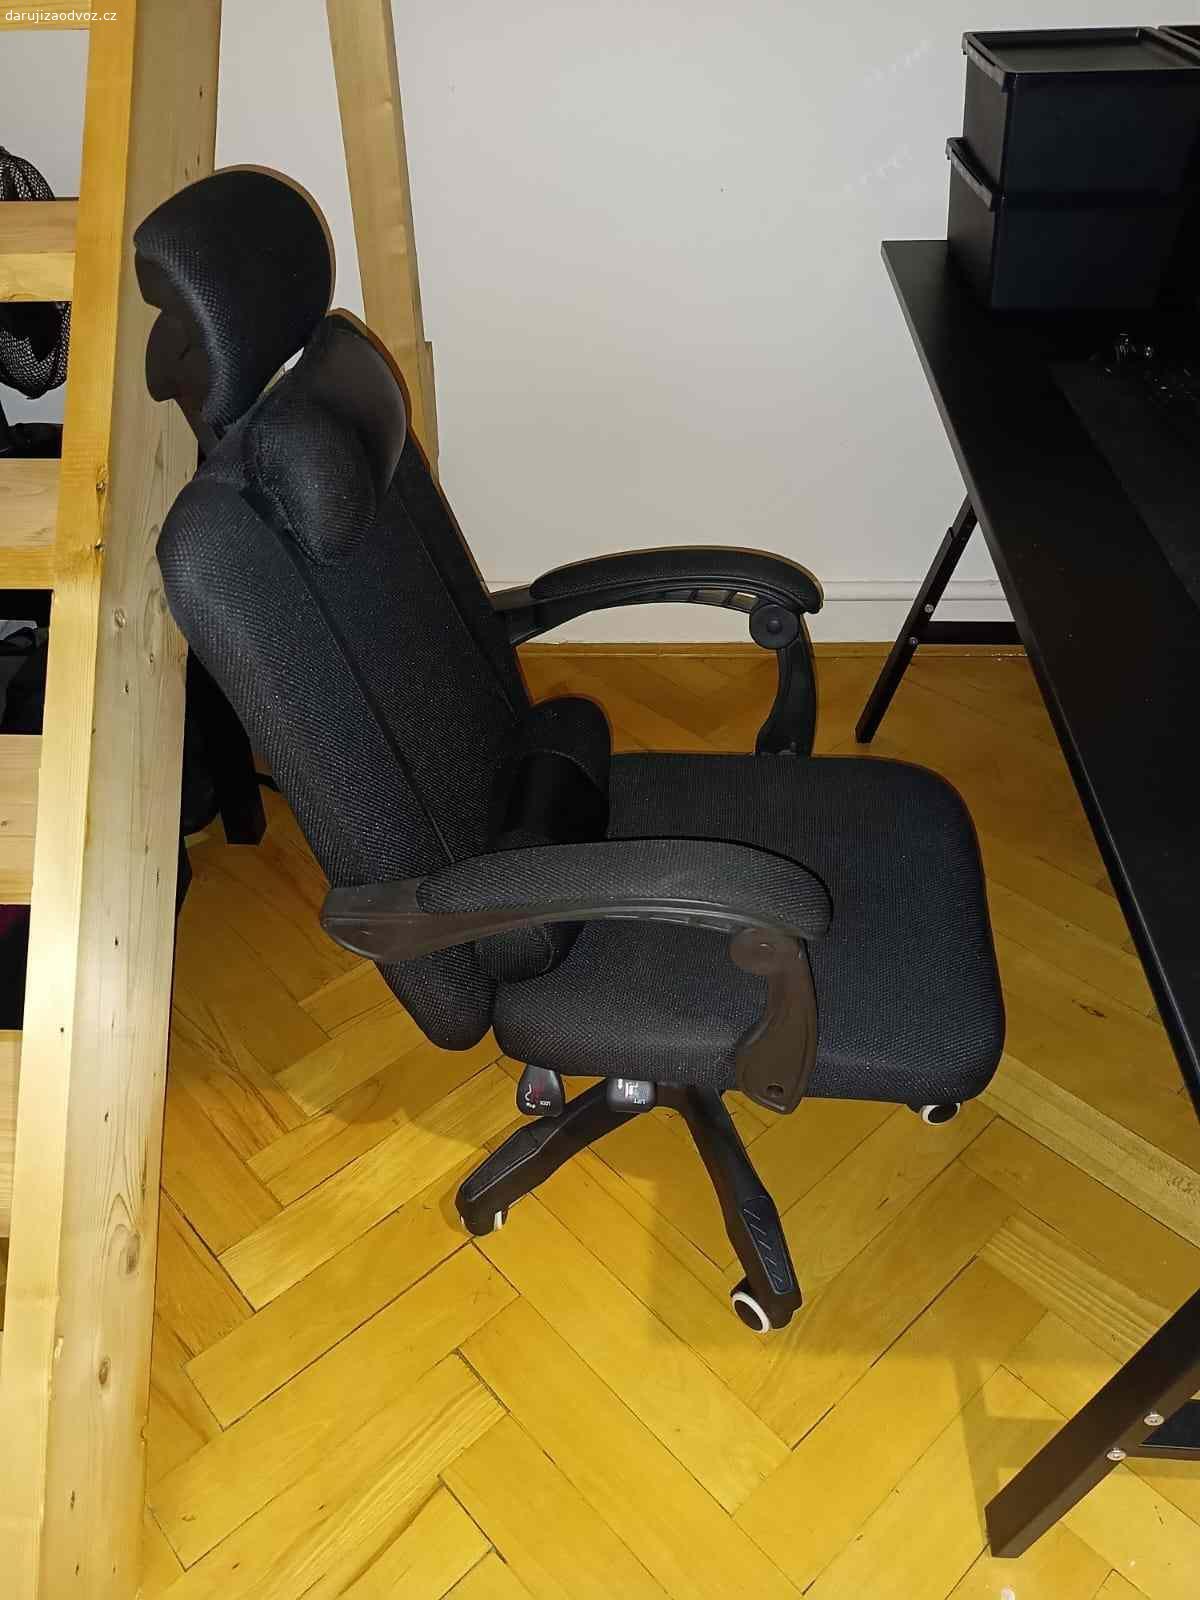 Kancelářská židle za odvoz. Daruji polohovací kancelářskou židli s vytahovací podnožkou. Nefunguje píst na nastavení výšky židle.